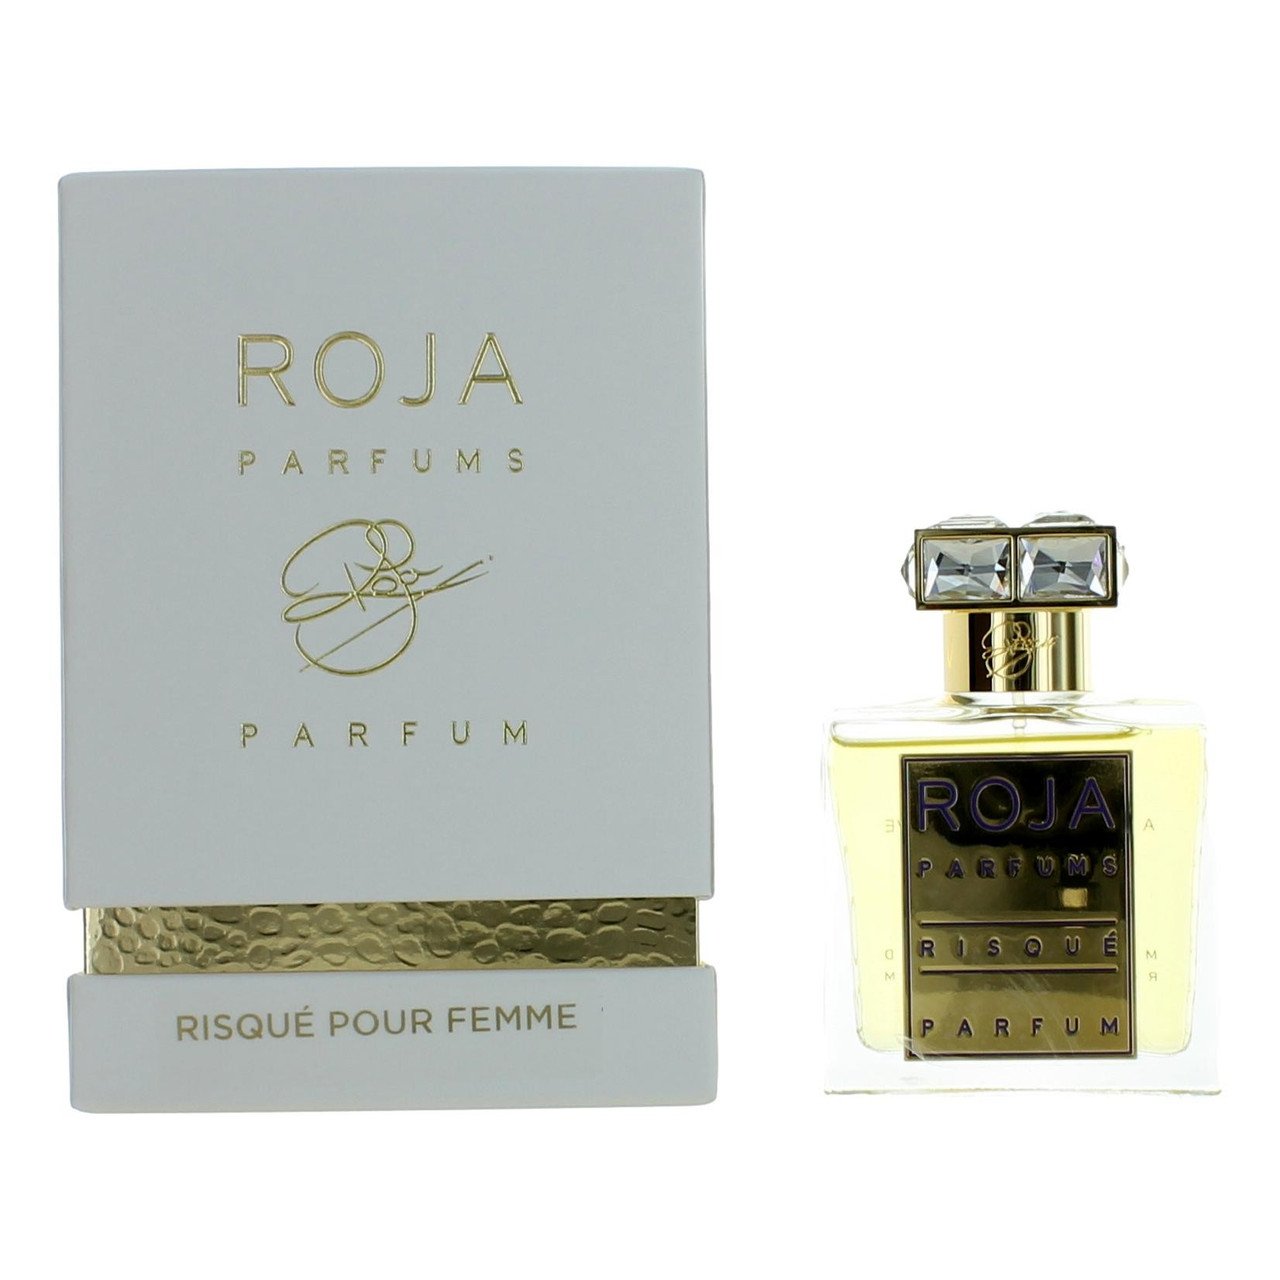 Roja Parfums Risque Pour Femme Perfume, Extrait de Parfum 1.7 oz Spray.